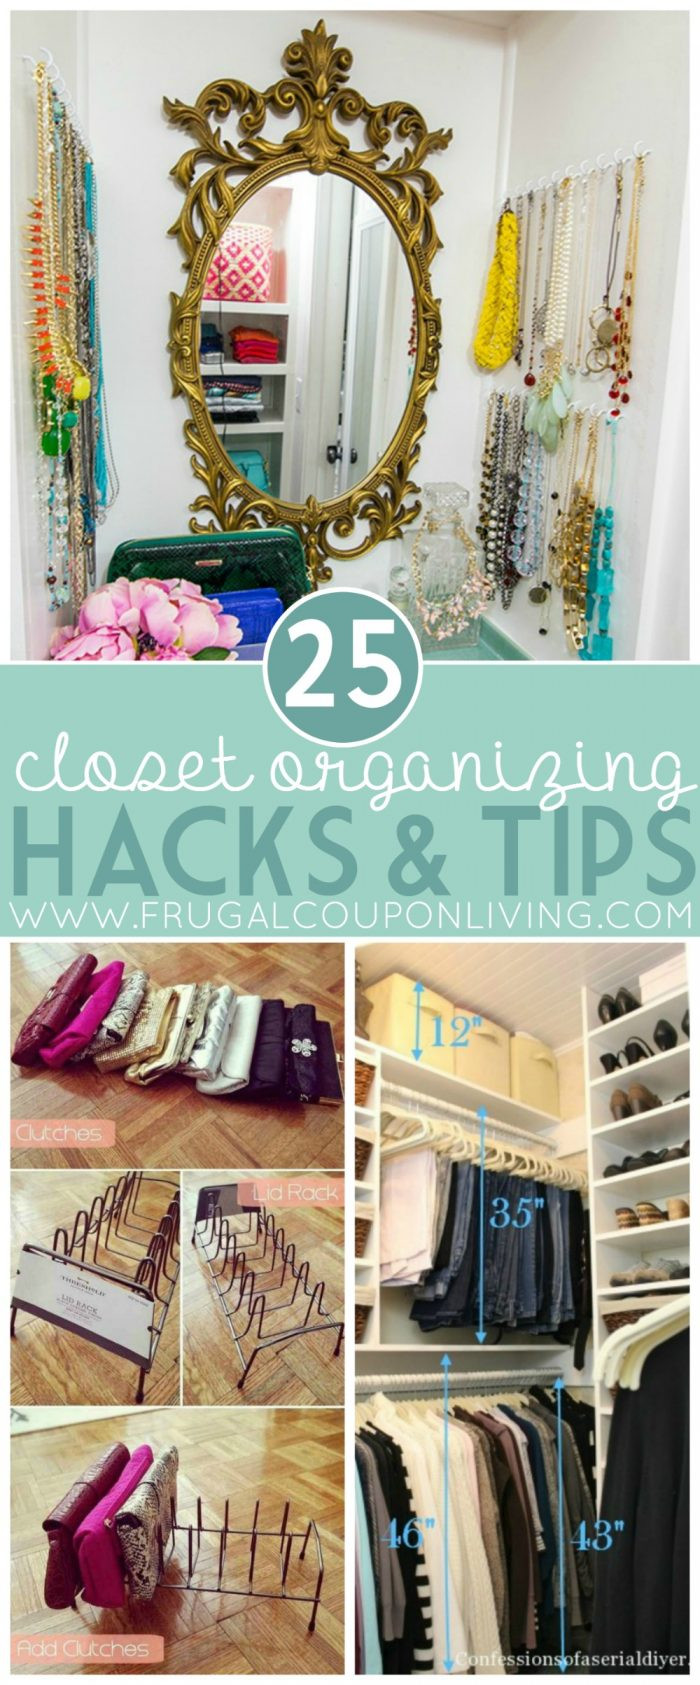 DIY Organize Closet
 Closet Organizing Hacks & Tips